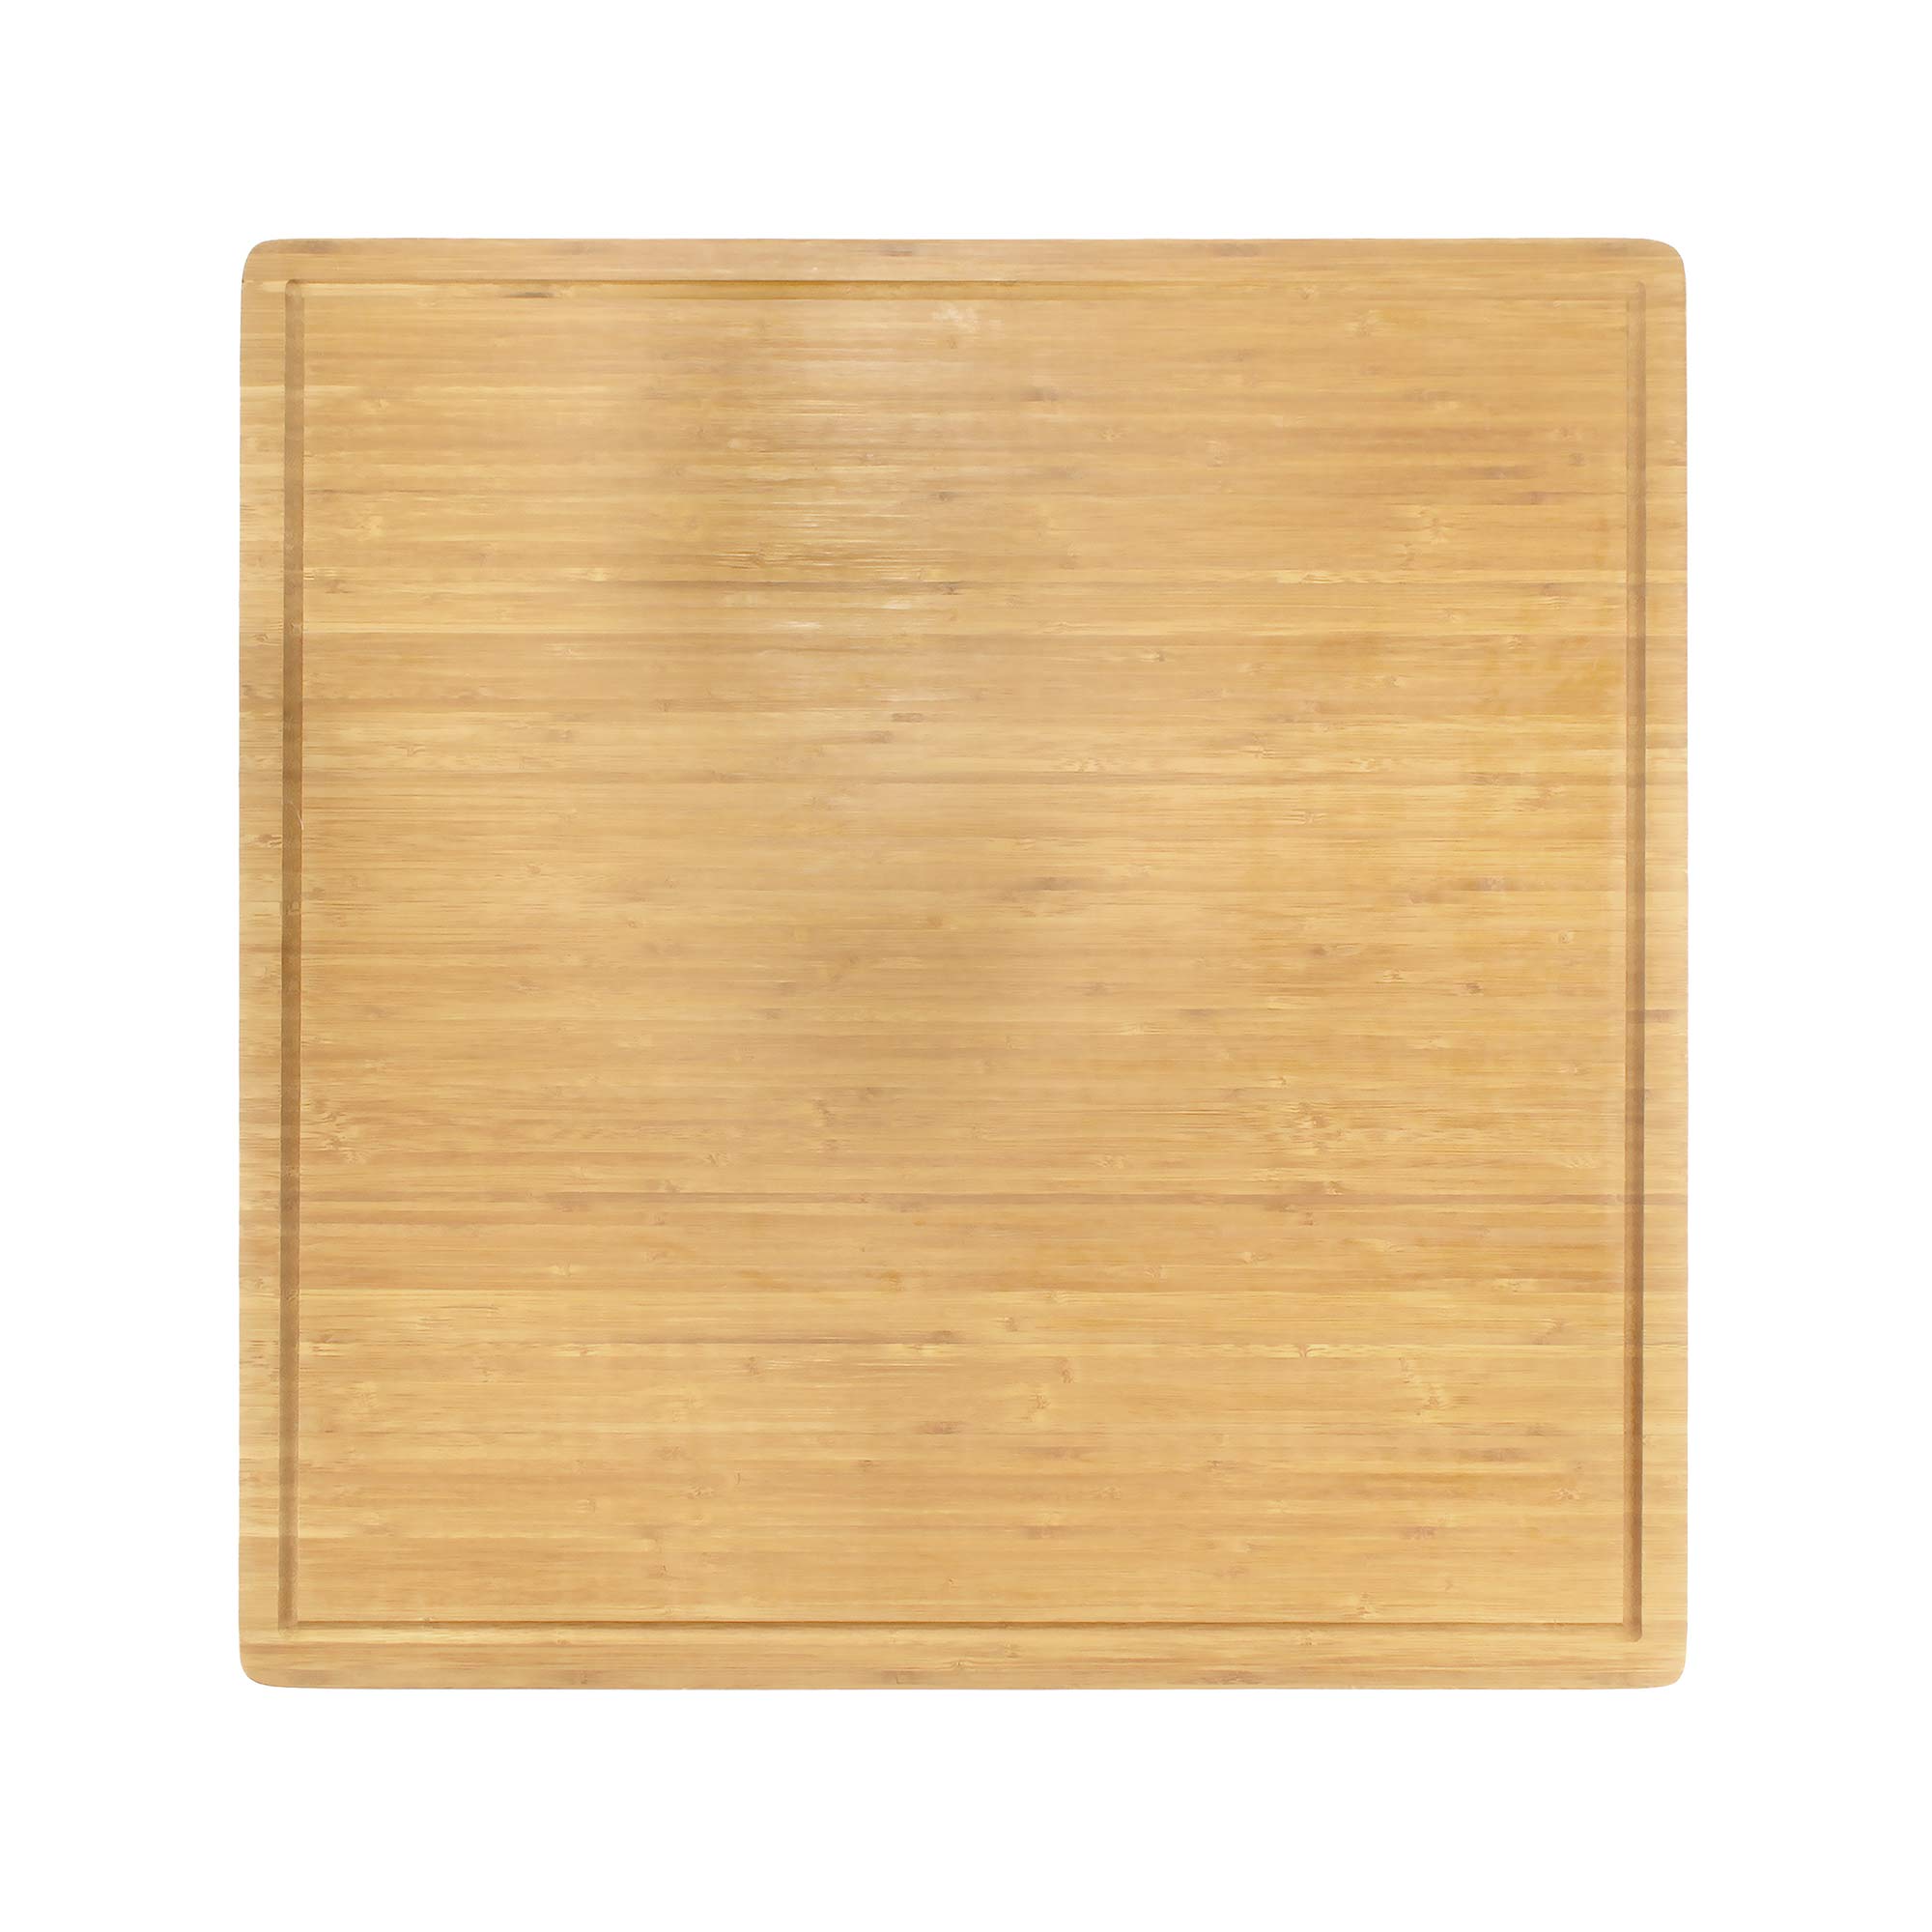 Large Bamboo Cutting Board with Modern Cut Edge –